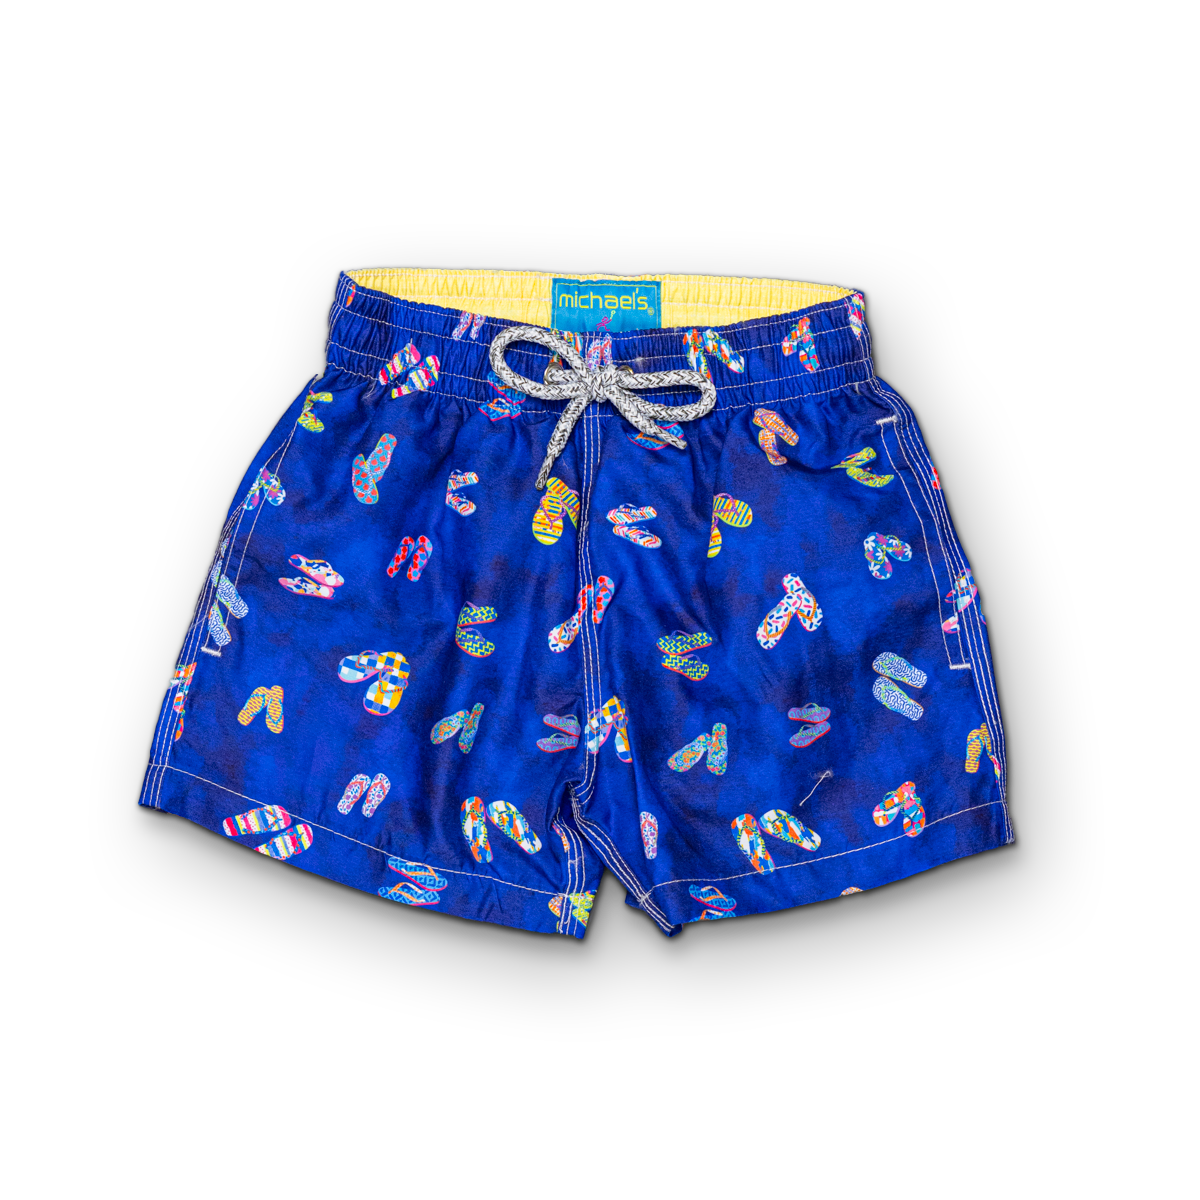 Navy swim trunks with flip flops pattern for boys